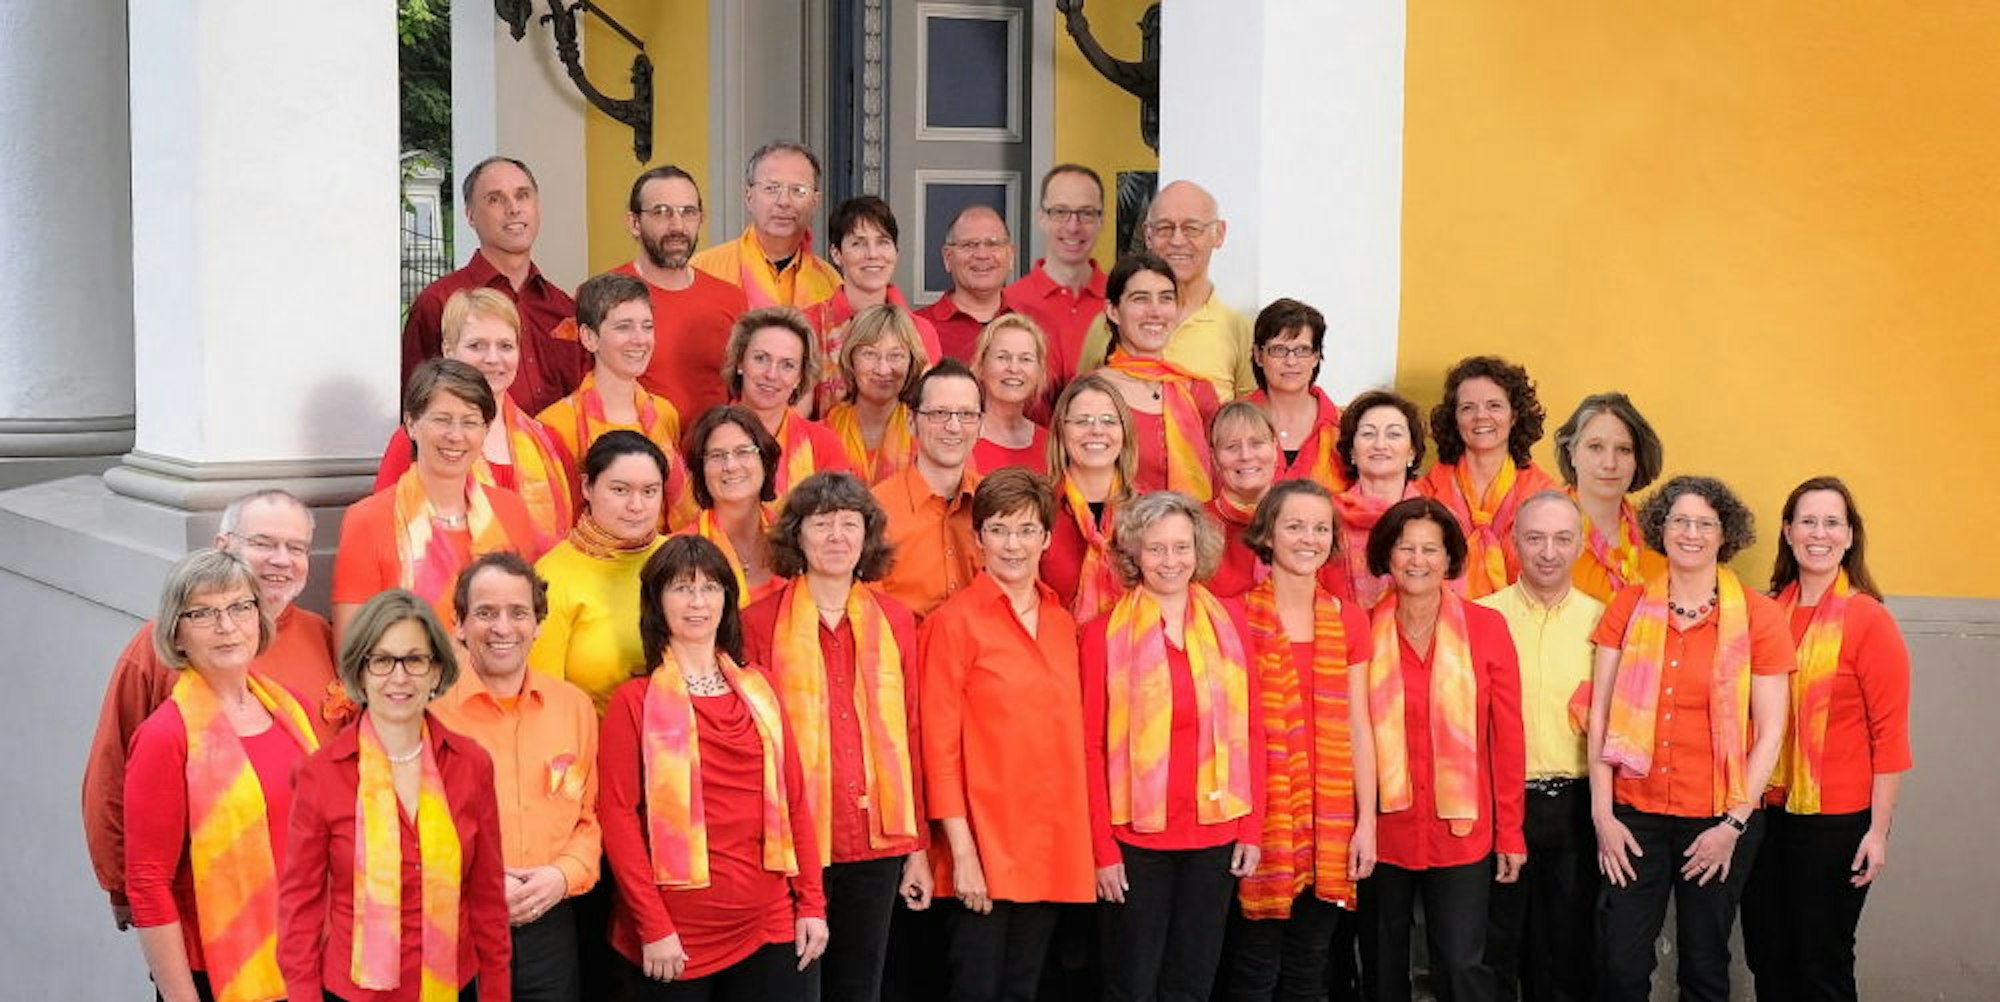 Farbenfroh treten die Quirl-Singers auf. Der Chor ist an der evangelischen Gnadenkirche zu Hause.